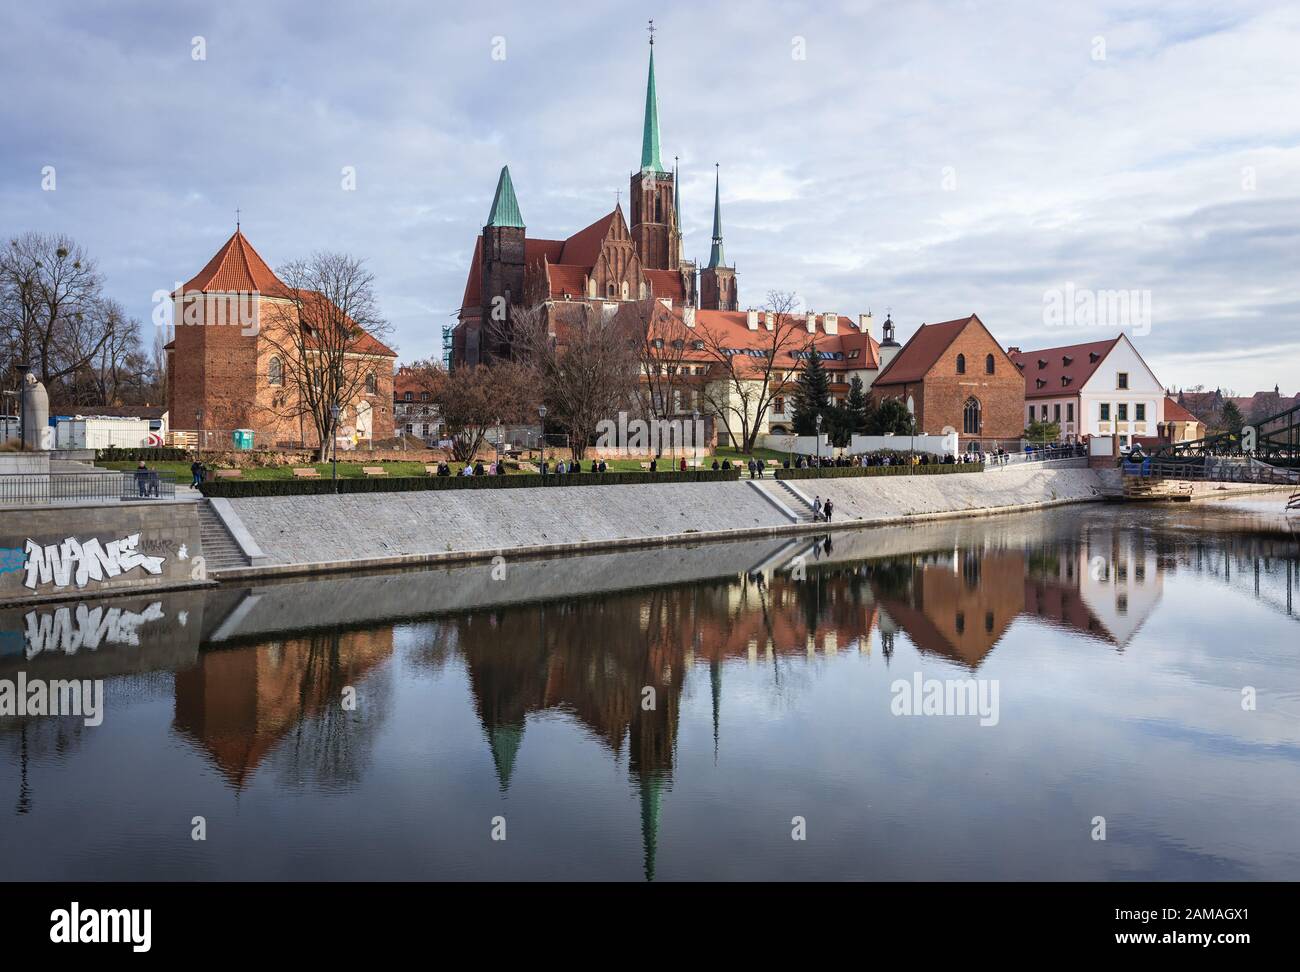 Chiese su Ostrow Tumski, la parte più antica della città di Wroclaw, vista da Sand Island sul fiume Oder, regione della Slesia della Polonia Foto Stock